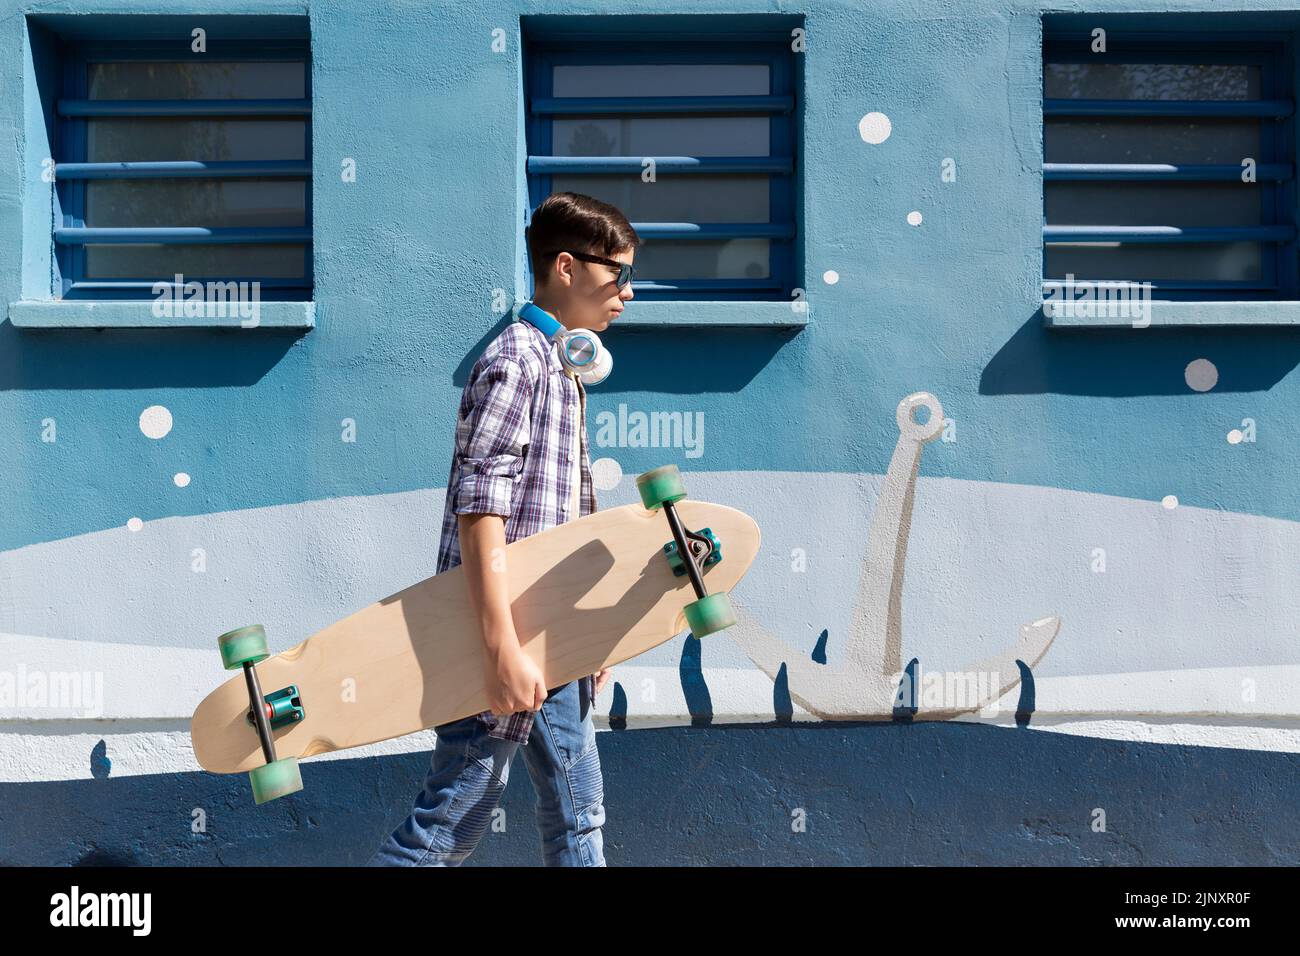 Adolescente caucásico caminando con su patineta junto a una pared azul. Foto de stock